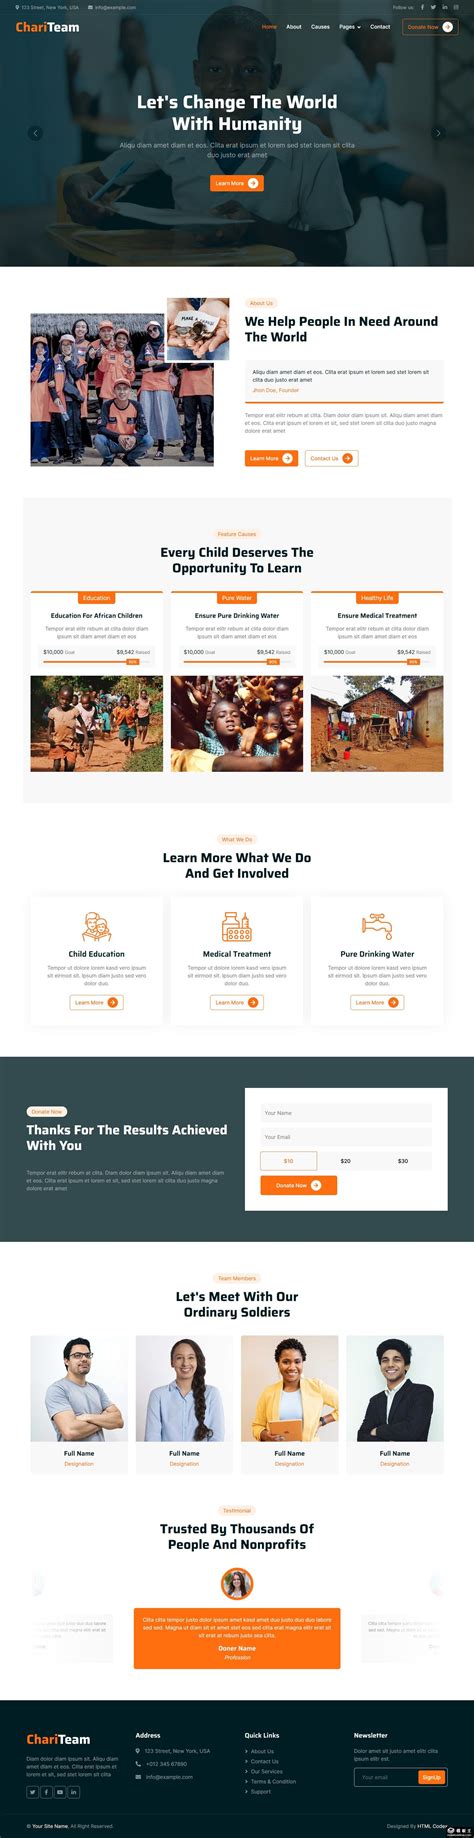 非营利组织的慈善公益网站设计模板 - 25学堂